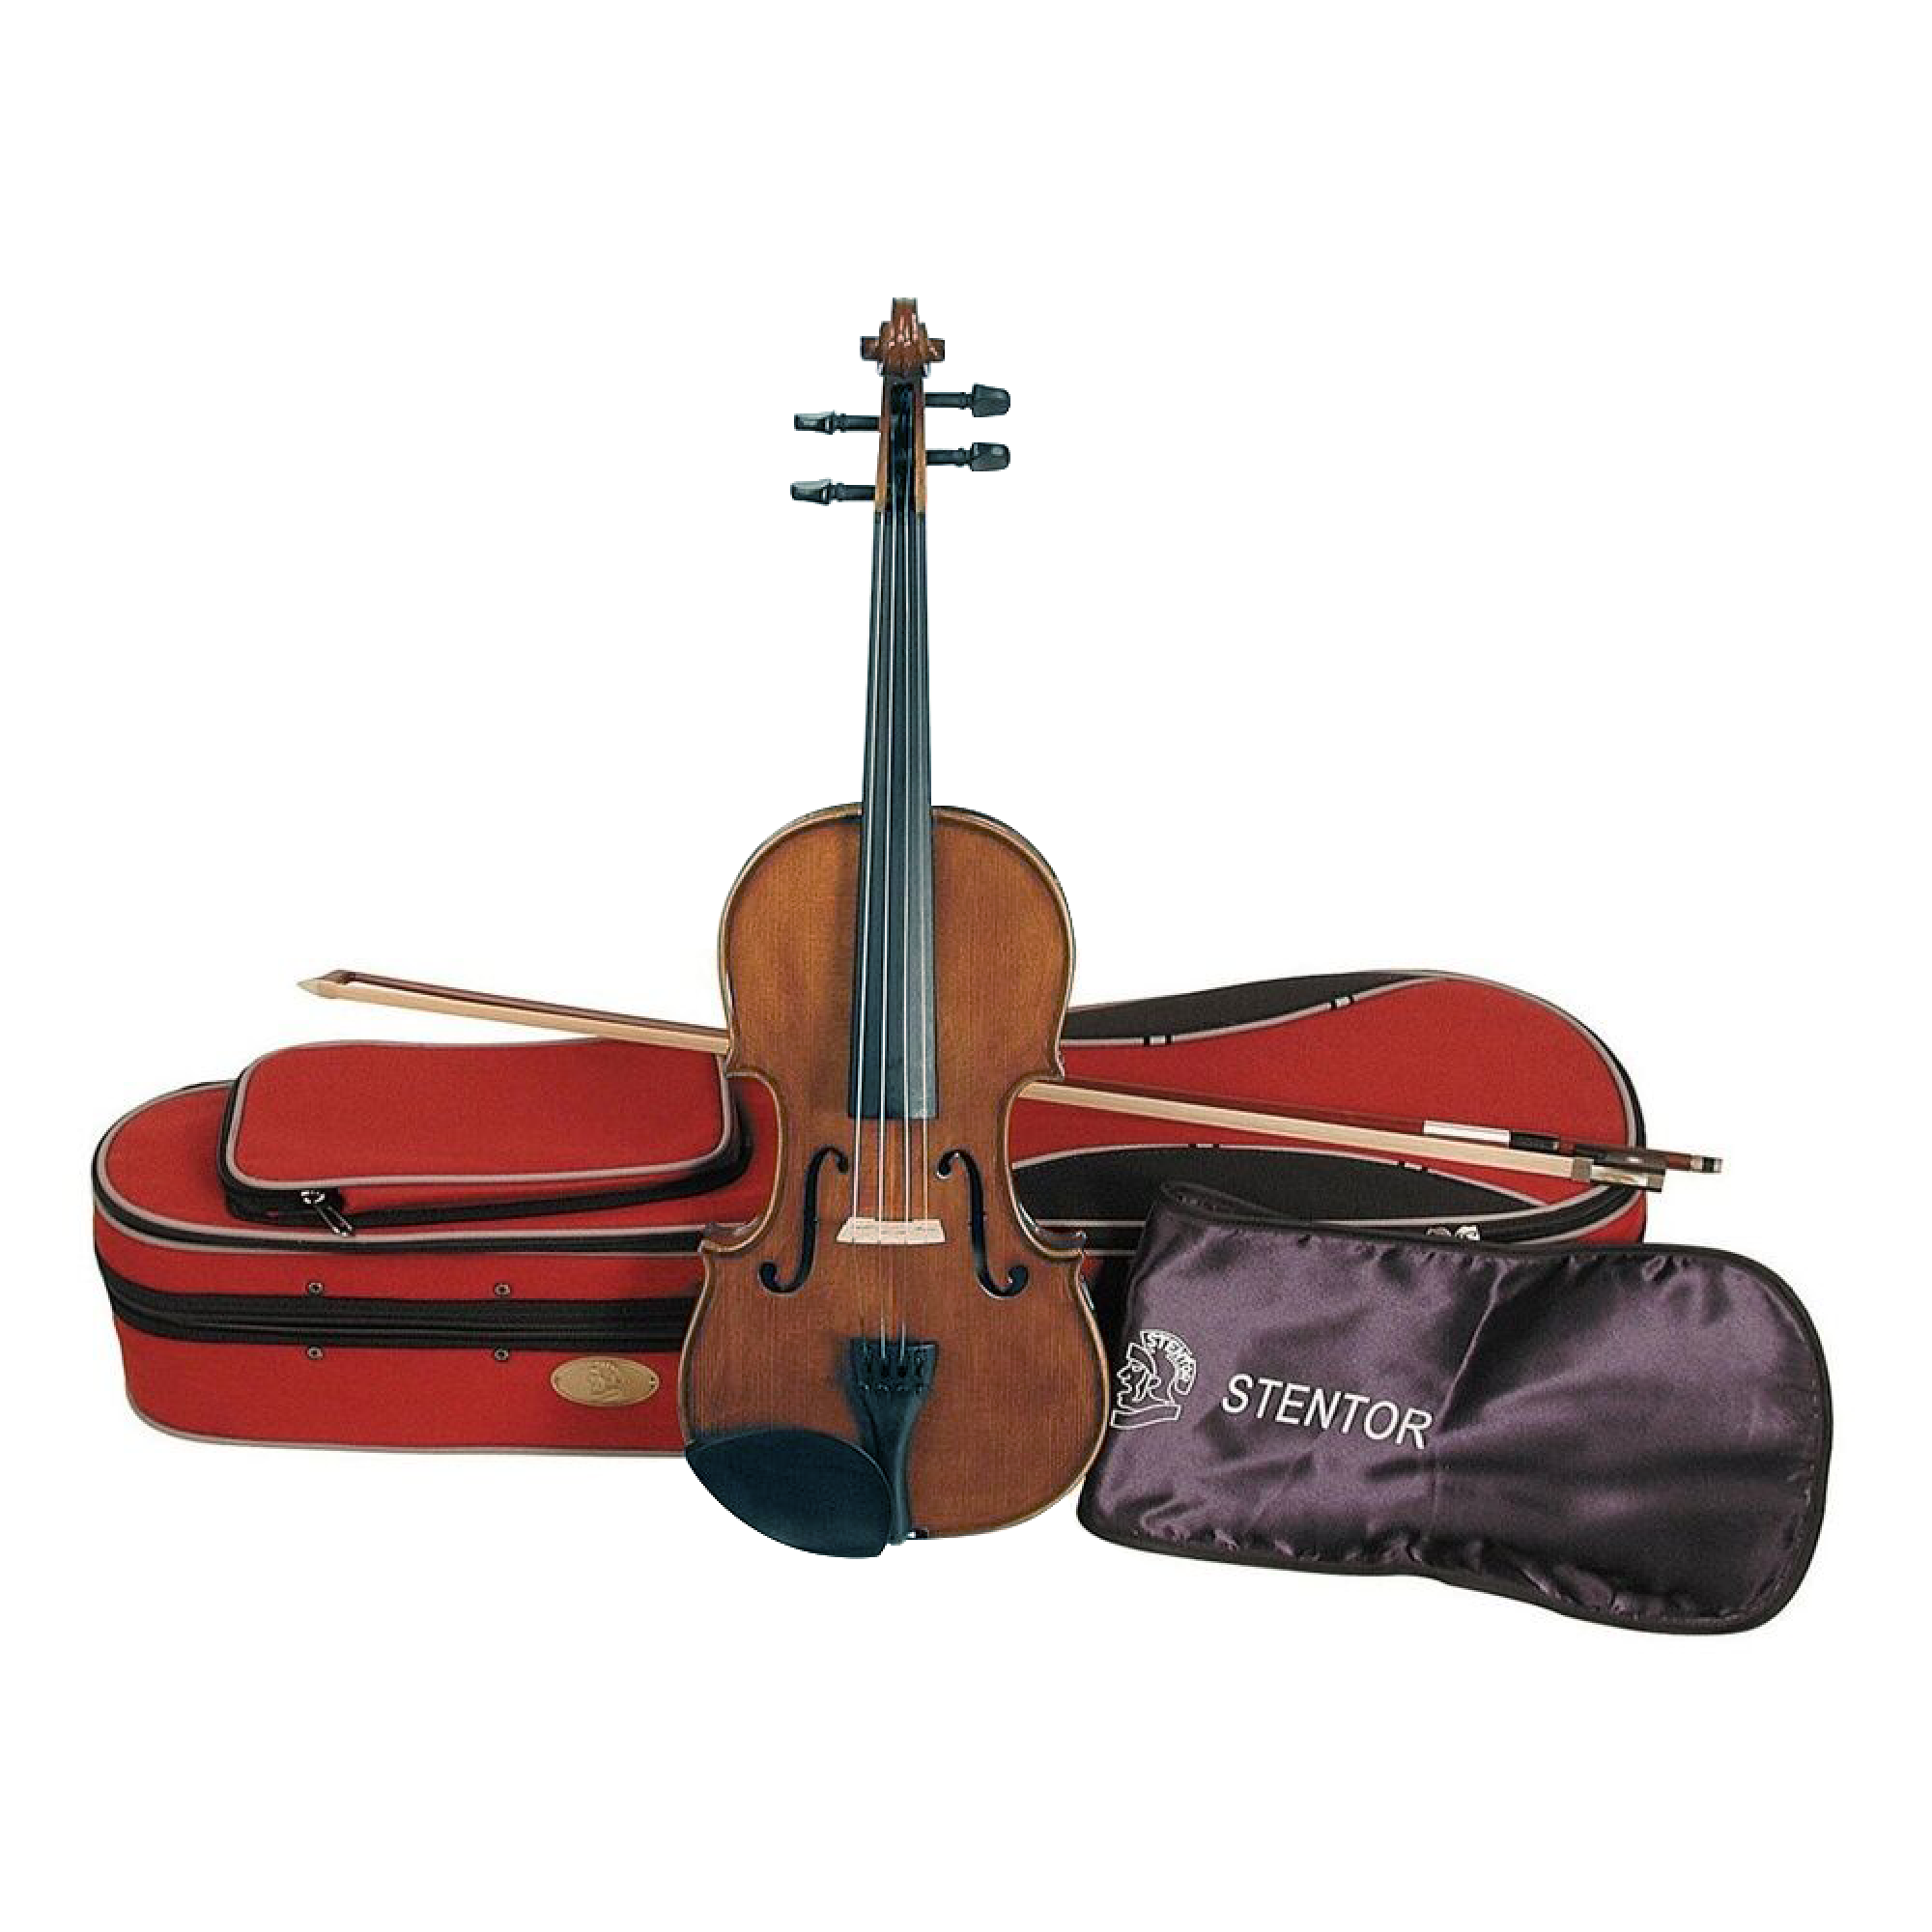 Купить скрипку для начинающих. Скрипка Stentor. Скрипка Stentor 4/4. Скрипка Fidelio student 1/16. Скрипка 1/4.